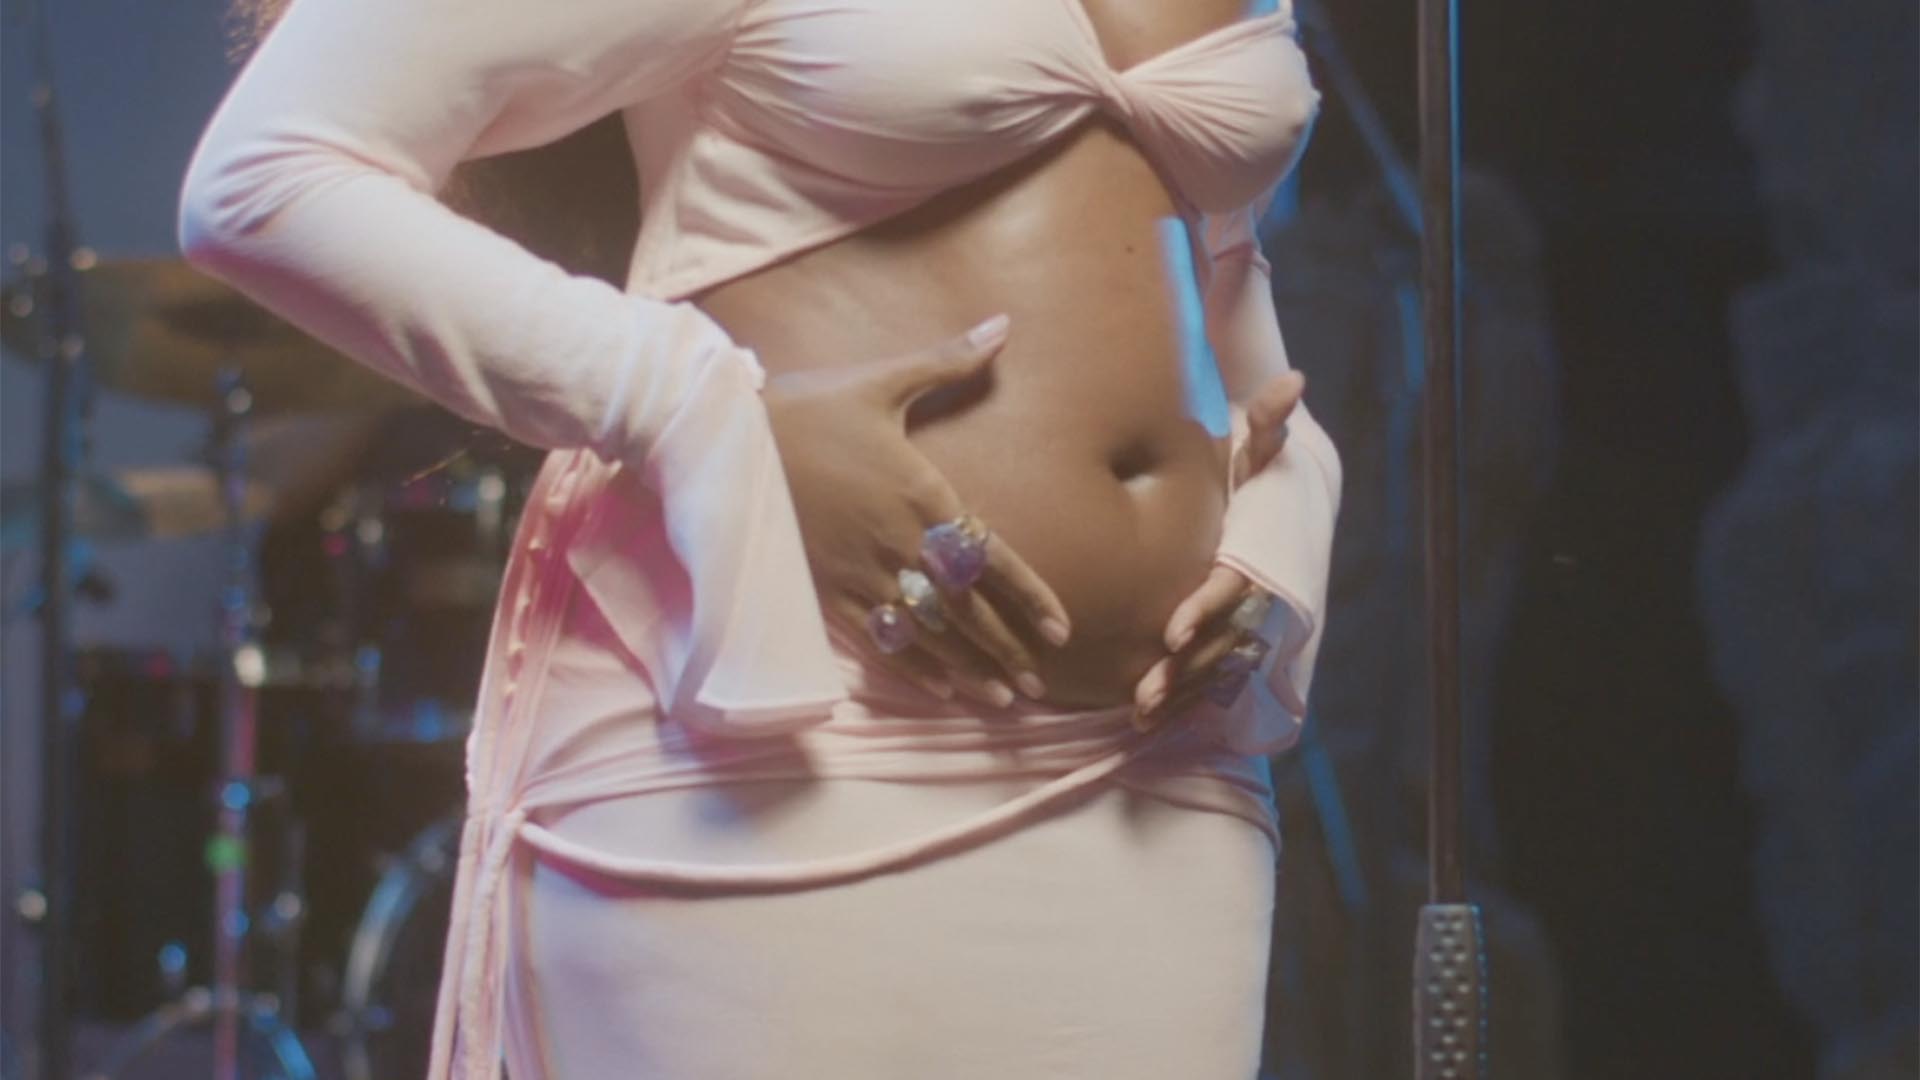 Iza mostra sua barriga de grávida pela primeira vez durante live no Instagram - Foto: Reprodução / Instagram